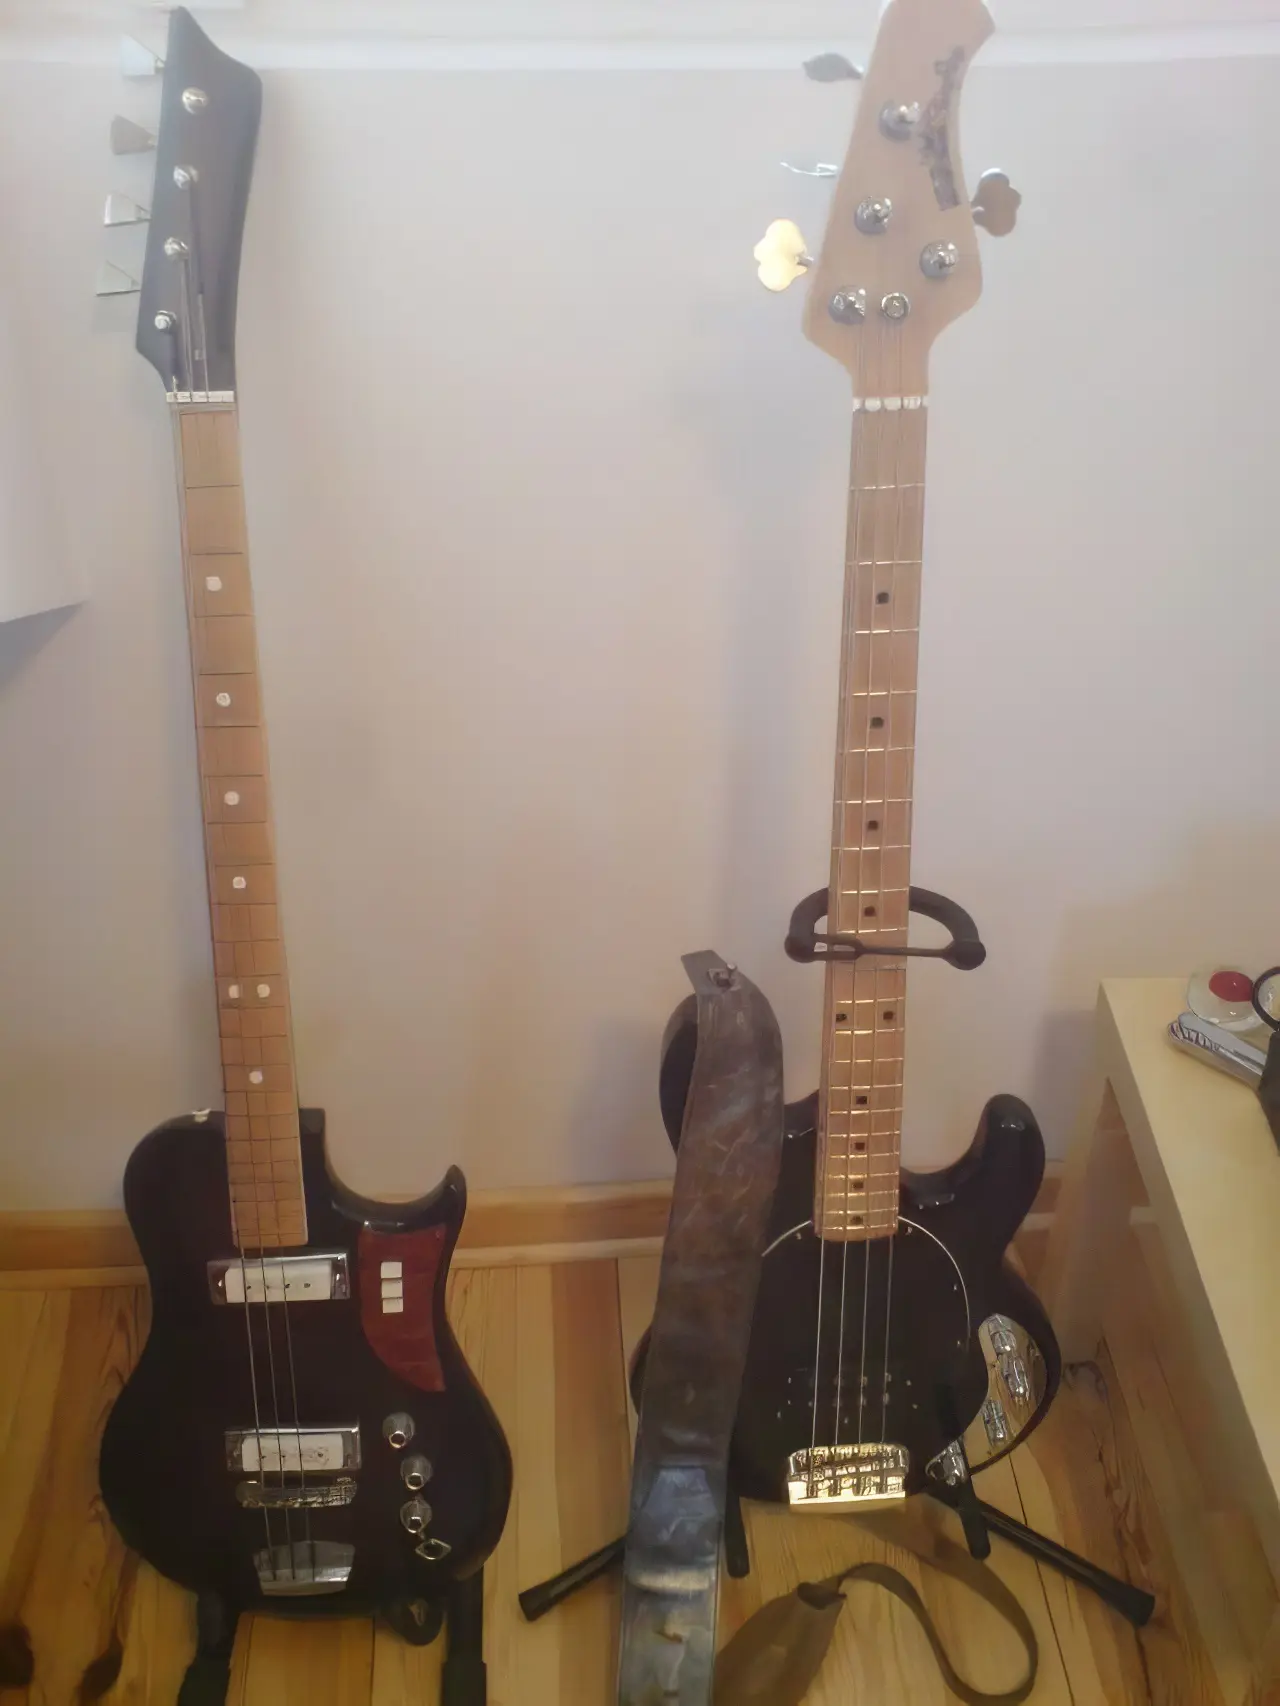 MM SR4 + Ural Bass gitara mm sr4  ural bass